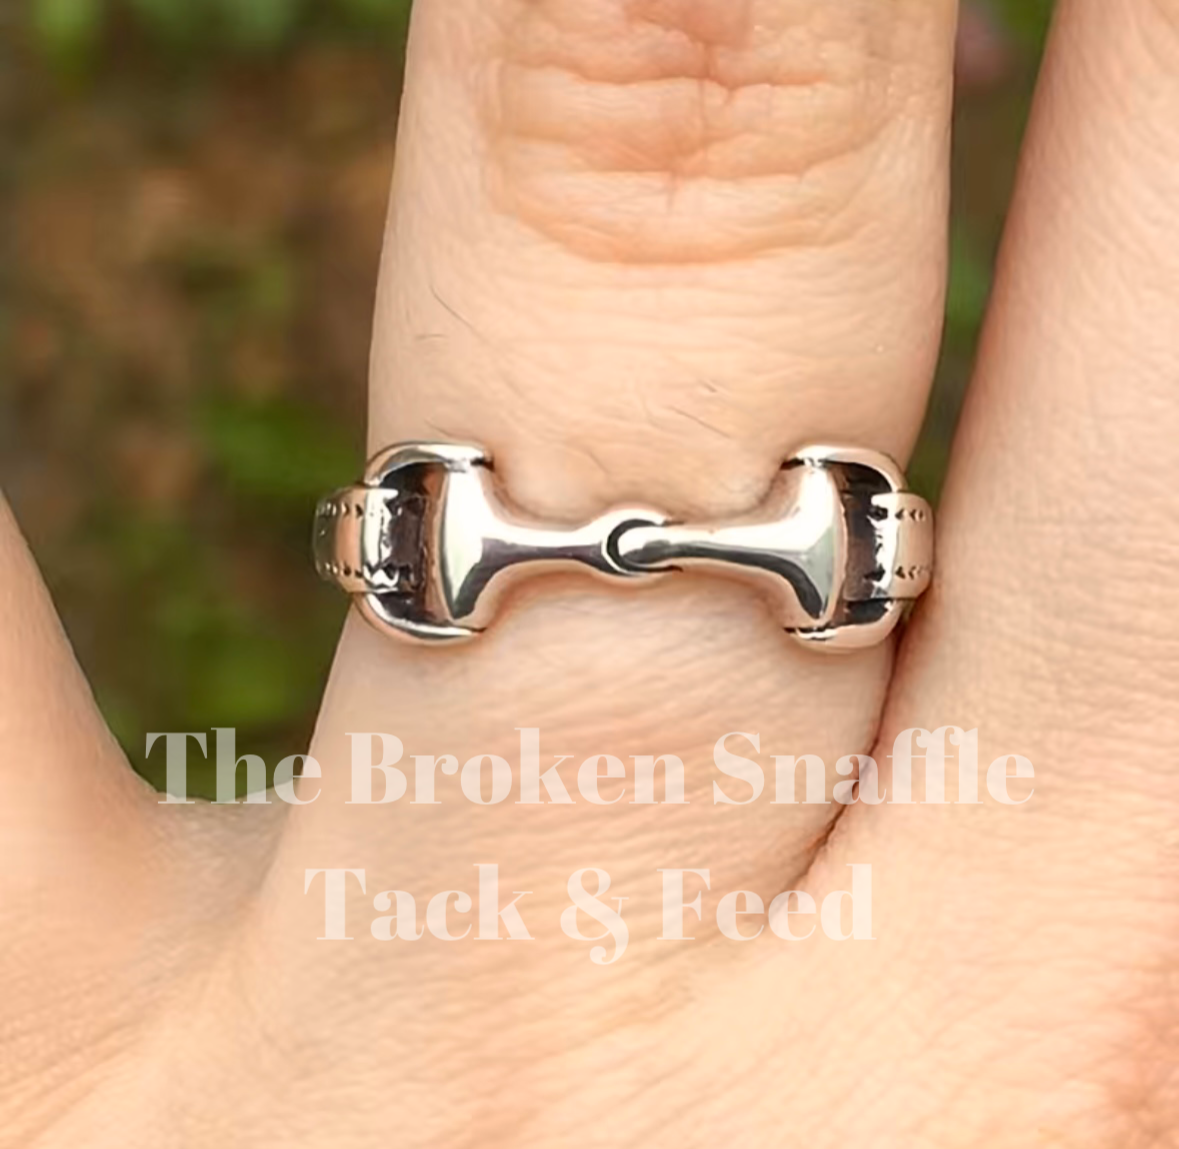 The Broken Snaffle Ring